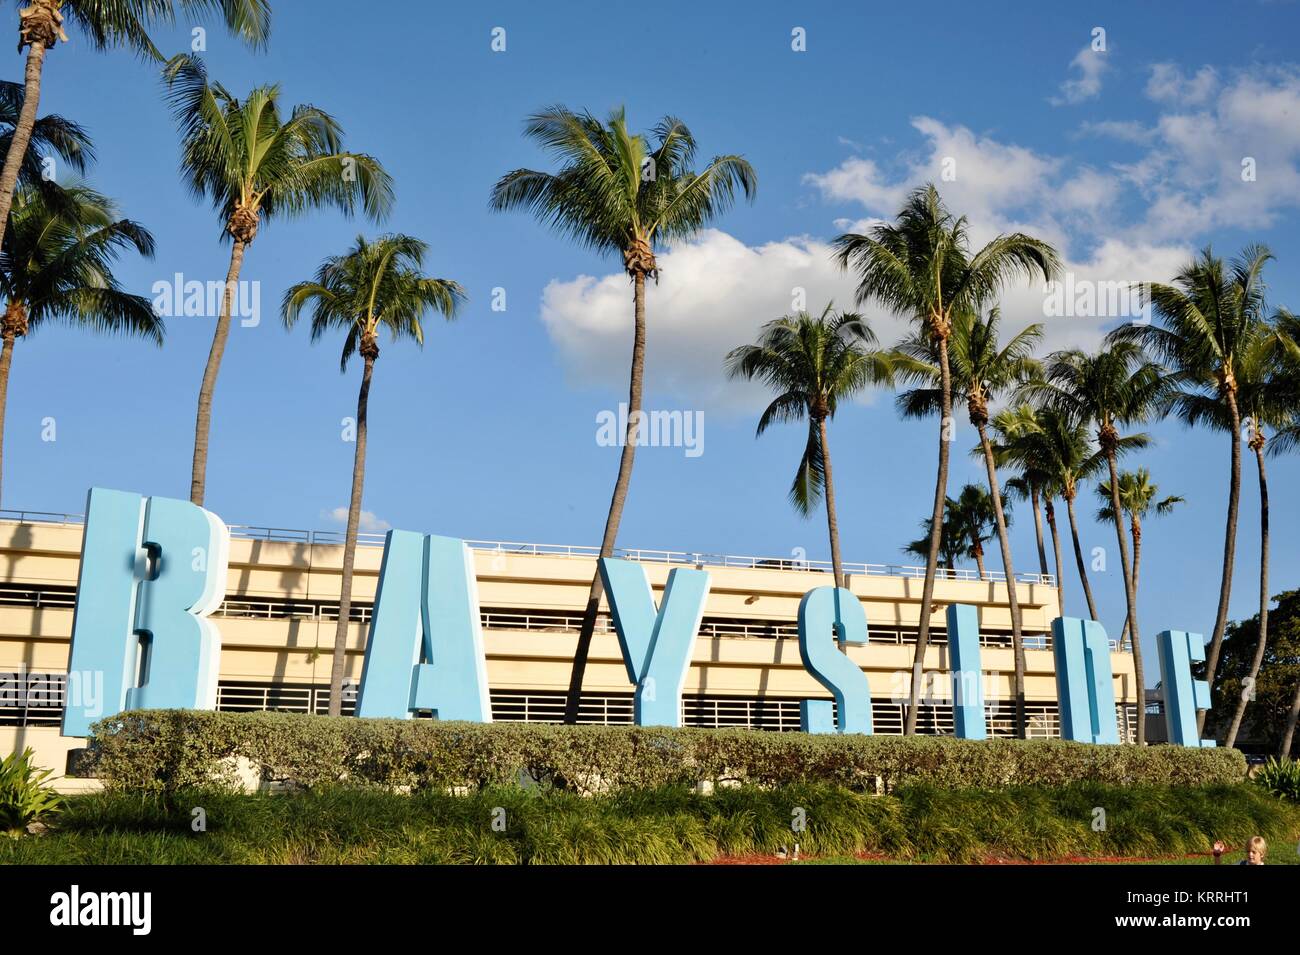 Bayside signe avec palmiers tropicaux, ciel bleu et édifices urbains, en dehors du marché Bayside à Miami, Floride, USA. Banque D'Images